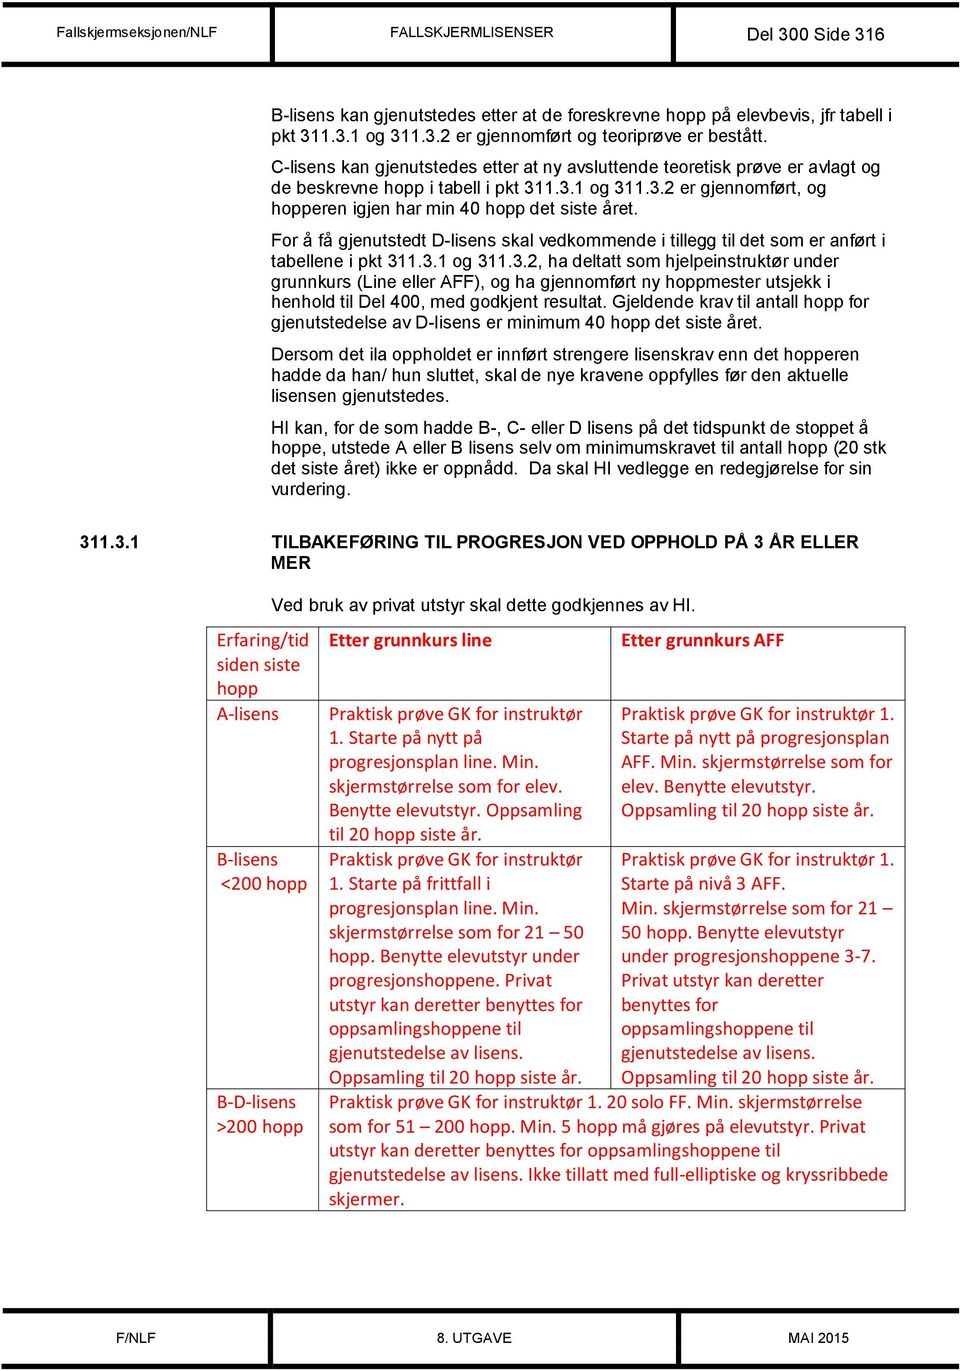 For å få gjenutstedt D-lisens skal vedkommende i tillegg til det som er anført i tabellene i pkt 31